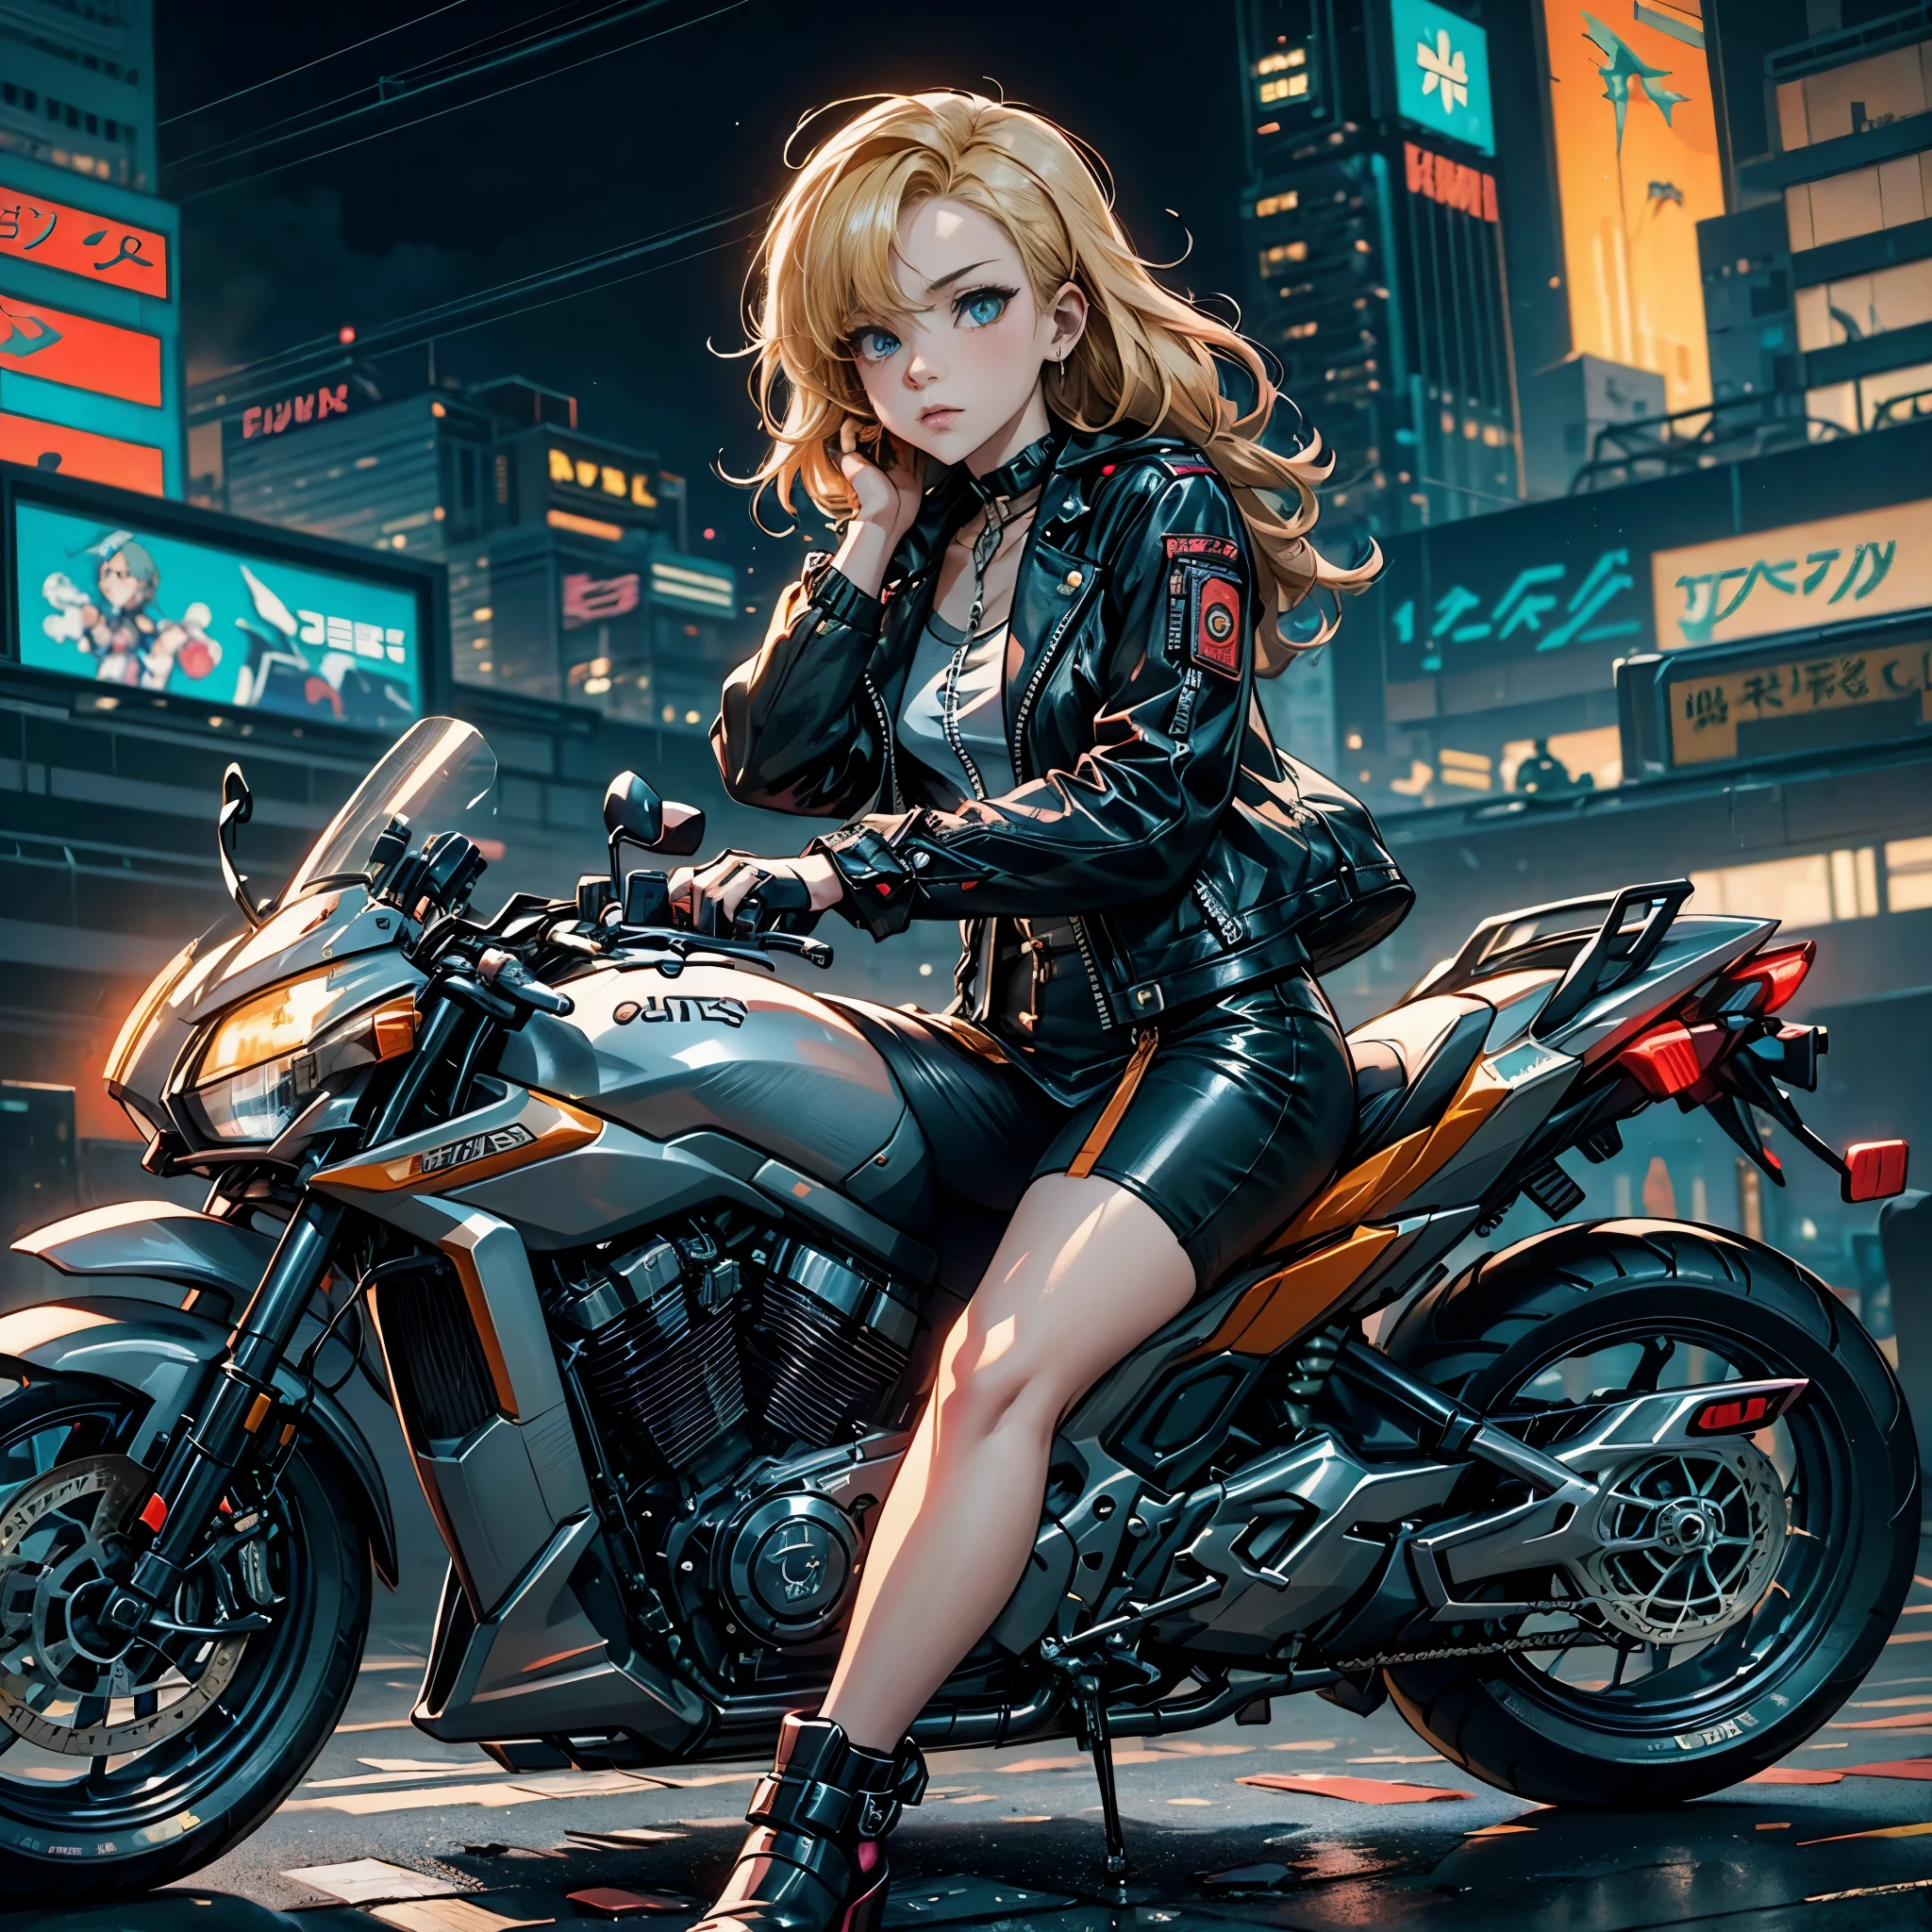 Múltiples poses y expresiones., hoja de personaje, Mujer rubia vestida de cuero sentada en una motocicleta, Sentado en una bicicleta cyberpunk, estilo de carrera perdida, chica anime ciberpunk, Al estilo de Los Tran, arte del anime ciberpunk, ciberpunk digital - arte anime, anime ciberpunk, digital arte del anime ciberpunk, female chica anime ciberpunk, Obra de arte estilo Gwaites, Wojtek Füss, anime ciberpunk moderno